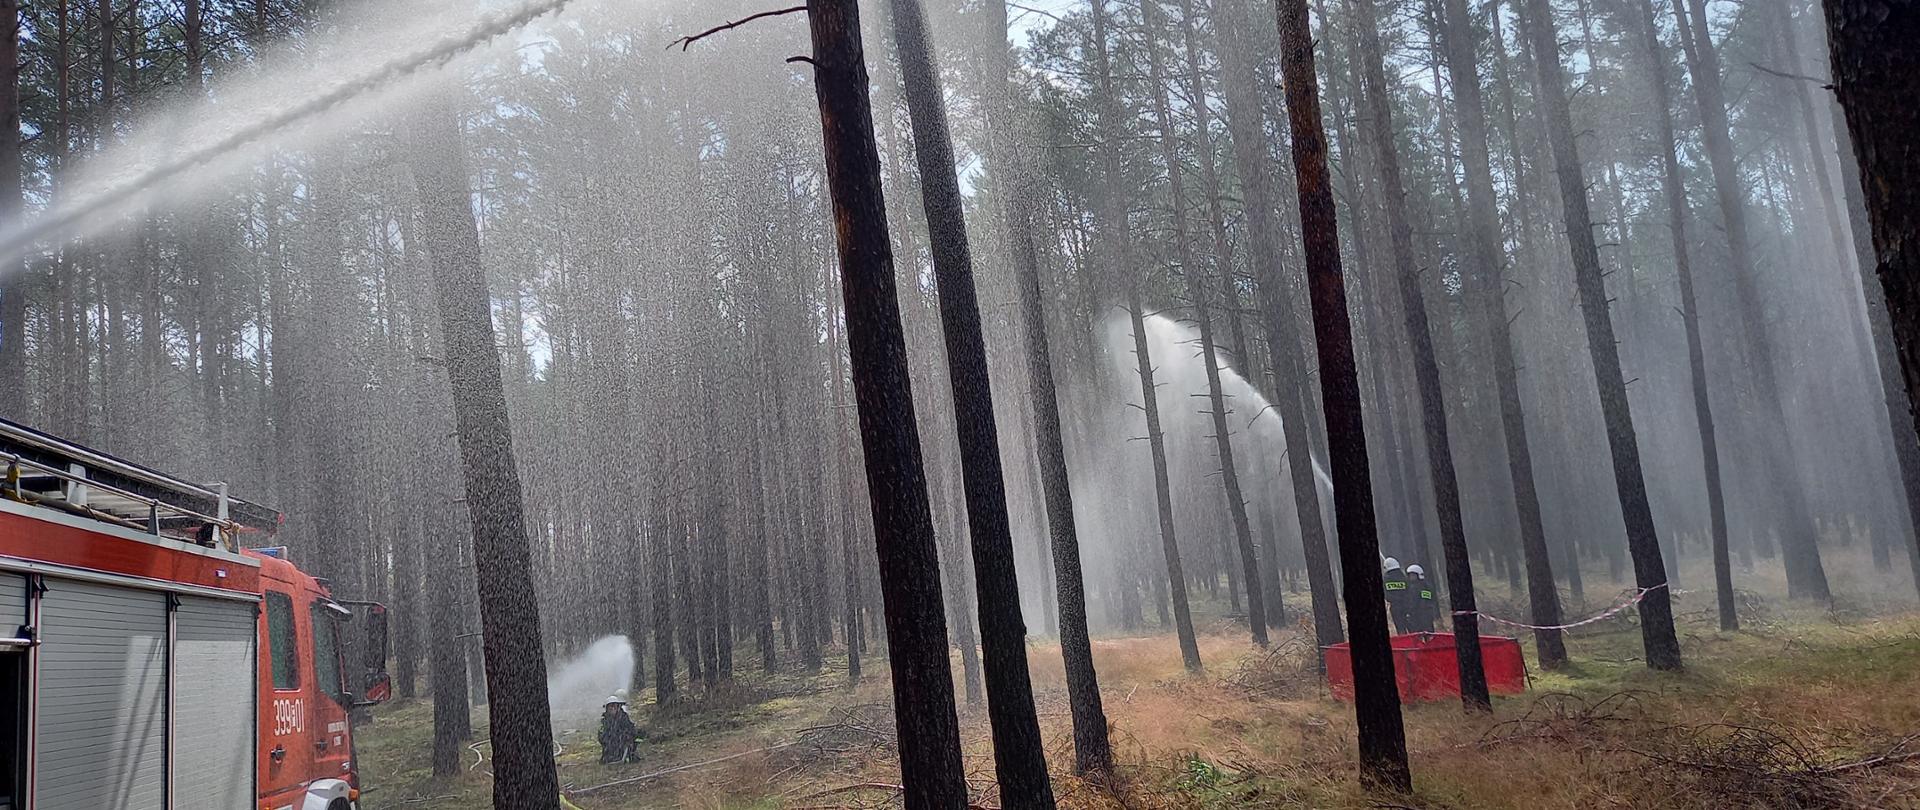 Widok prądów wodnych podawanych przez strażaków w lesie. Po lewej stronie samochód pożarniczy. Na ziemi widoczne rozwinięte linie gaśnicze.